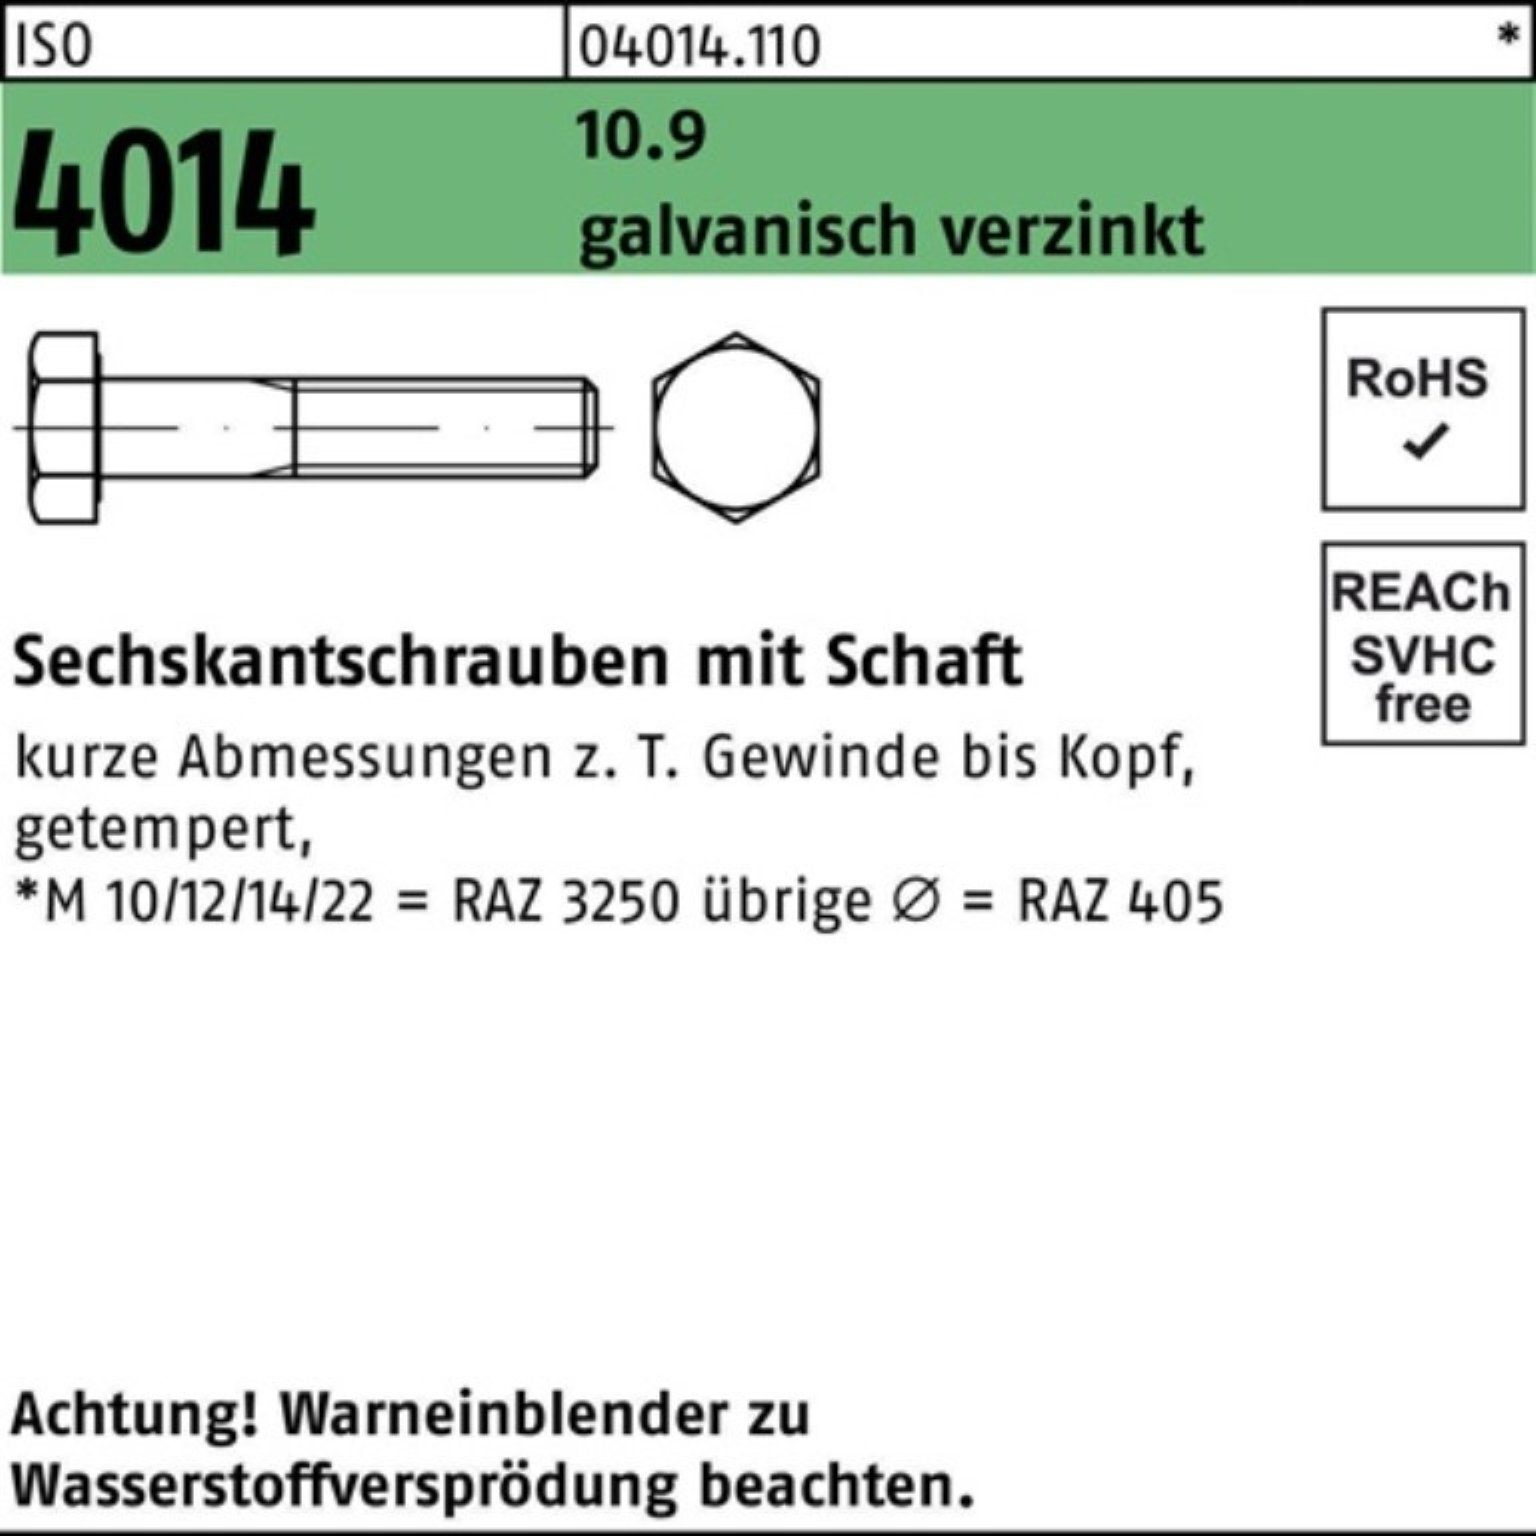 M16x Bufab ISO Schaft 100er Sechskantschraube Sechskantschraube 4014 10.9 galv.verz. 190 Pack